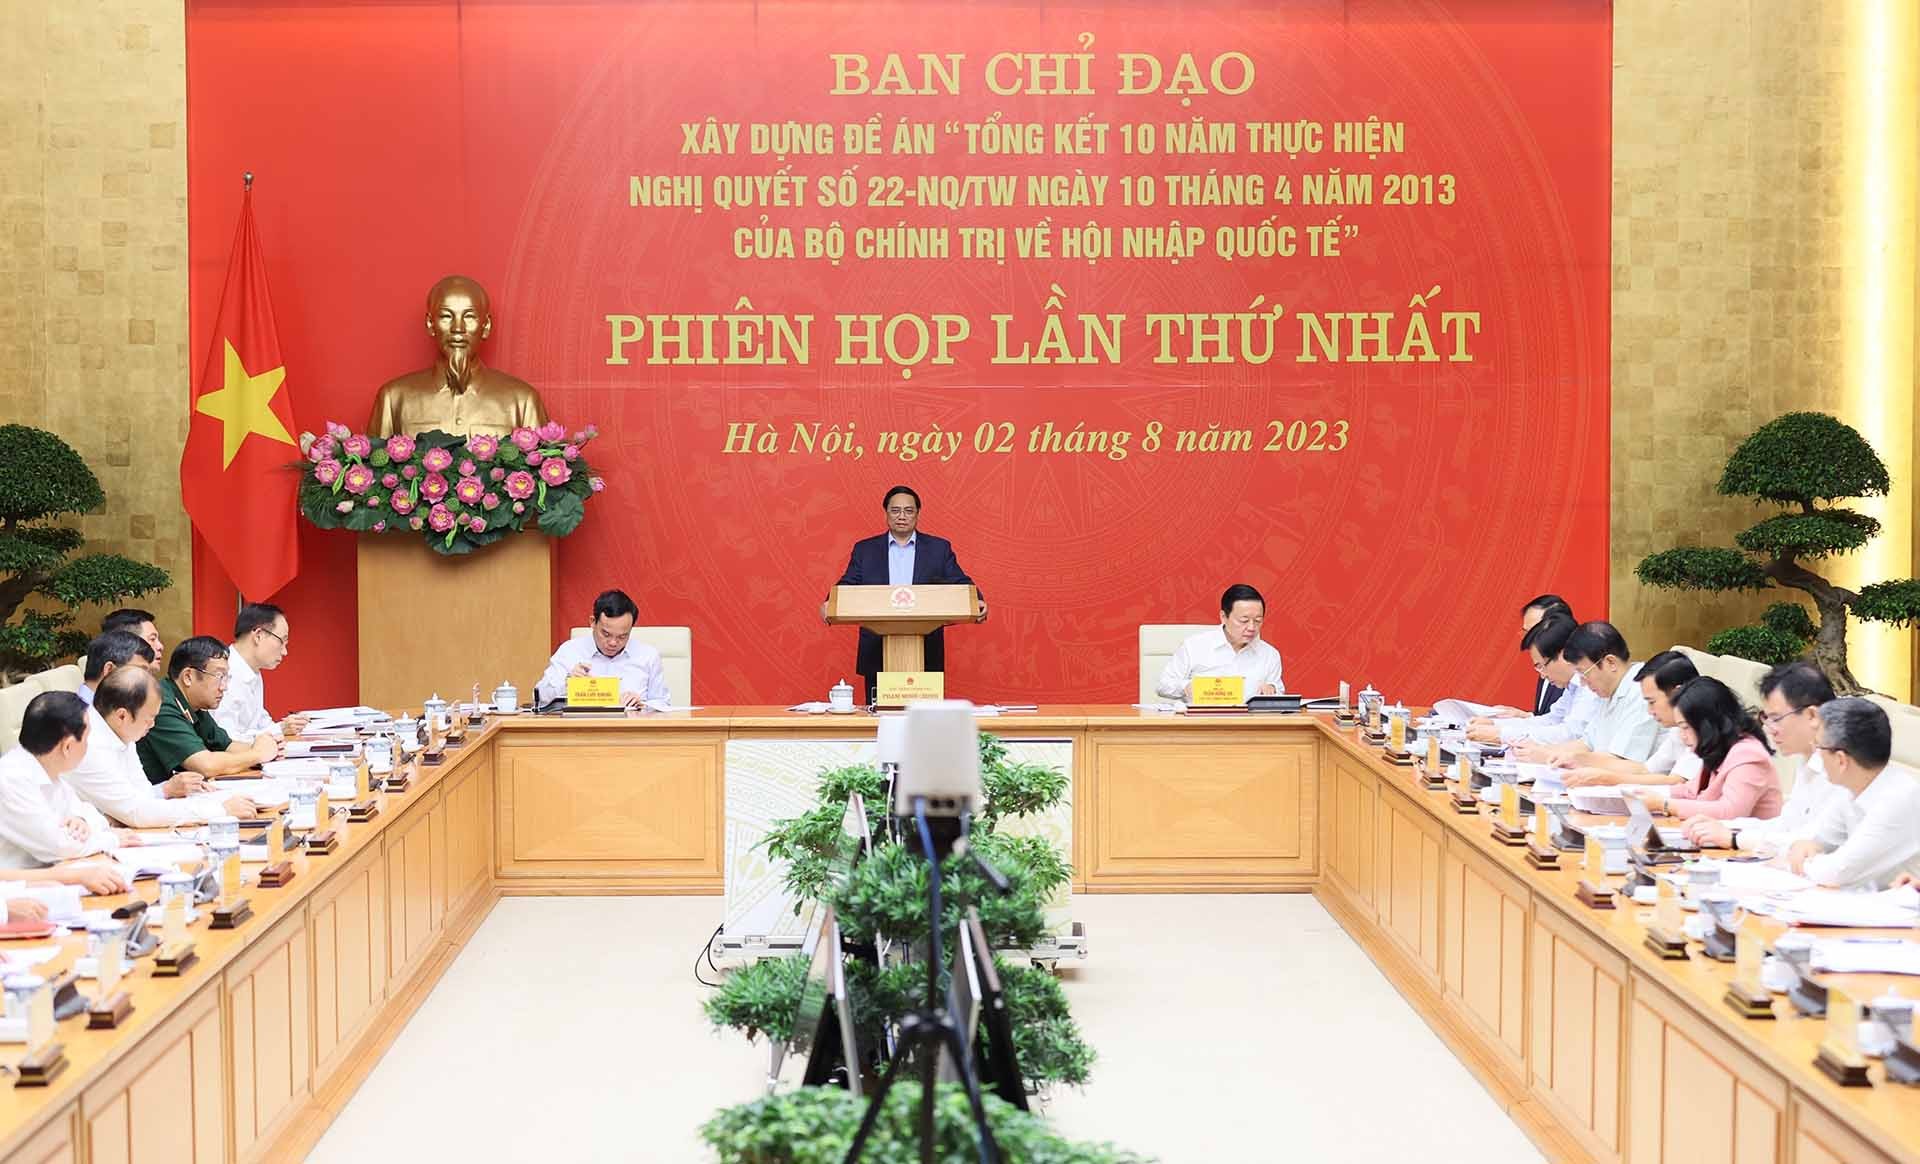 Thủ tướng Phạm Minh Chính chủ trì phiên họp lần thứ nhất Ban chỉ đạo tổng kết 10 năm về hội nhập quốc tế. (Nguồn: TTXVN)